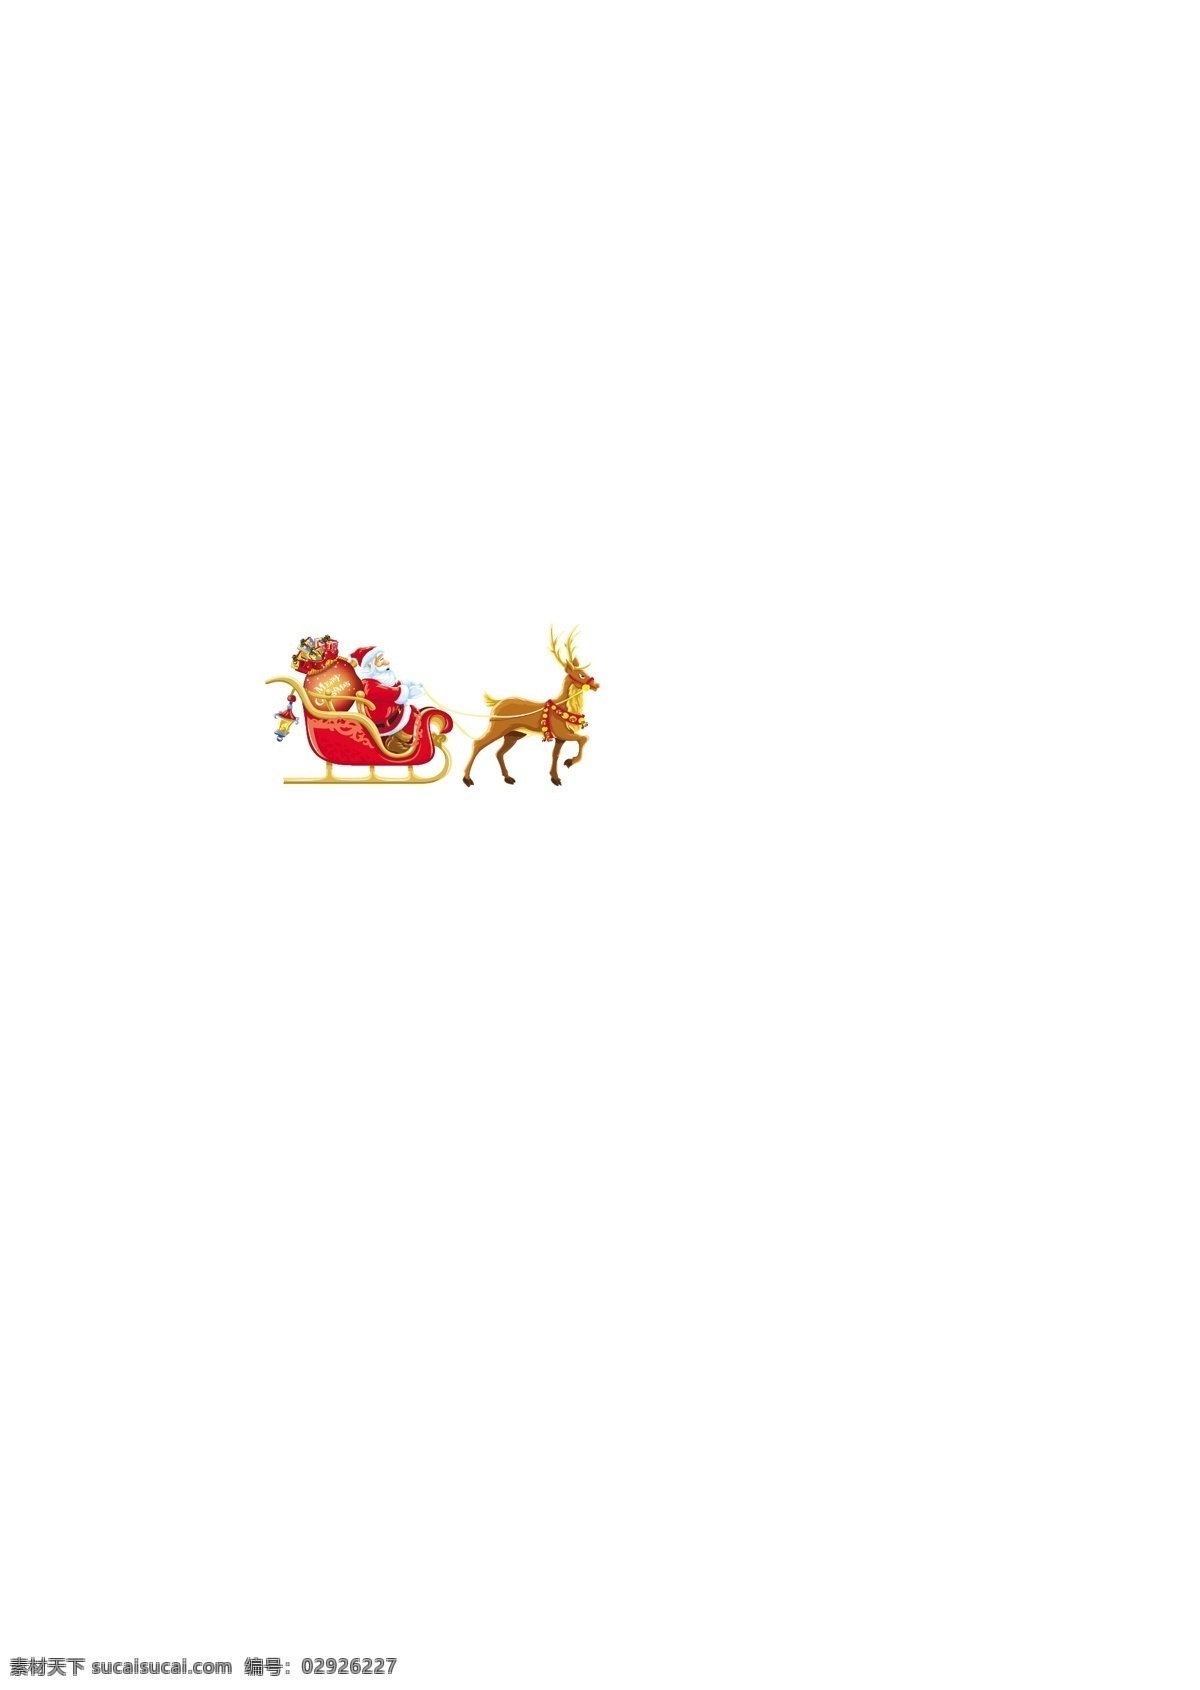 圣诞老人送礼 圣诞老人 圣诞老公公 送礼 圣诞礼物 礼品 月亮 月球 驯鹿 麋鹿 插画 水墨 水彩 背景画 动漫 卡通 梦幻 图画素材 梦幻素材 童话世界 背景素材 卡通人物 卡通娃娃 梦想世界 儿童世界 卡通玩偶 漫画 梦幻世界 天堂 动漫玩偶 卡通设计 动画设计 动漫设计 幼儿卡通